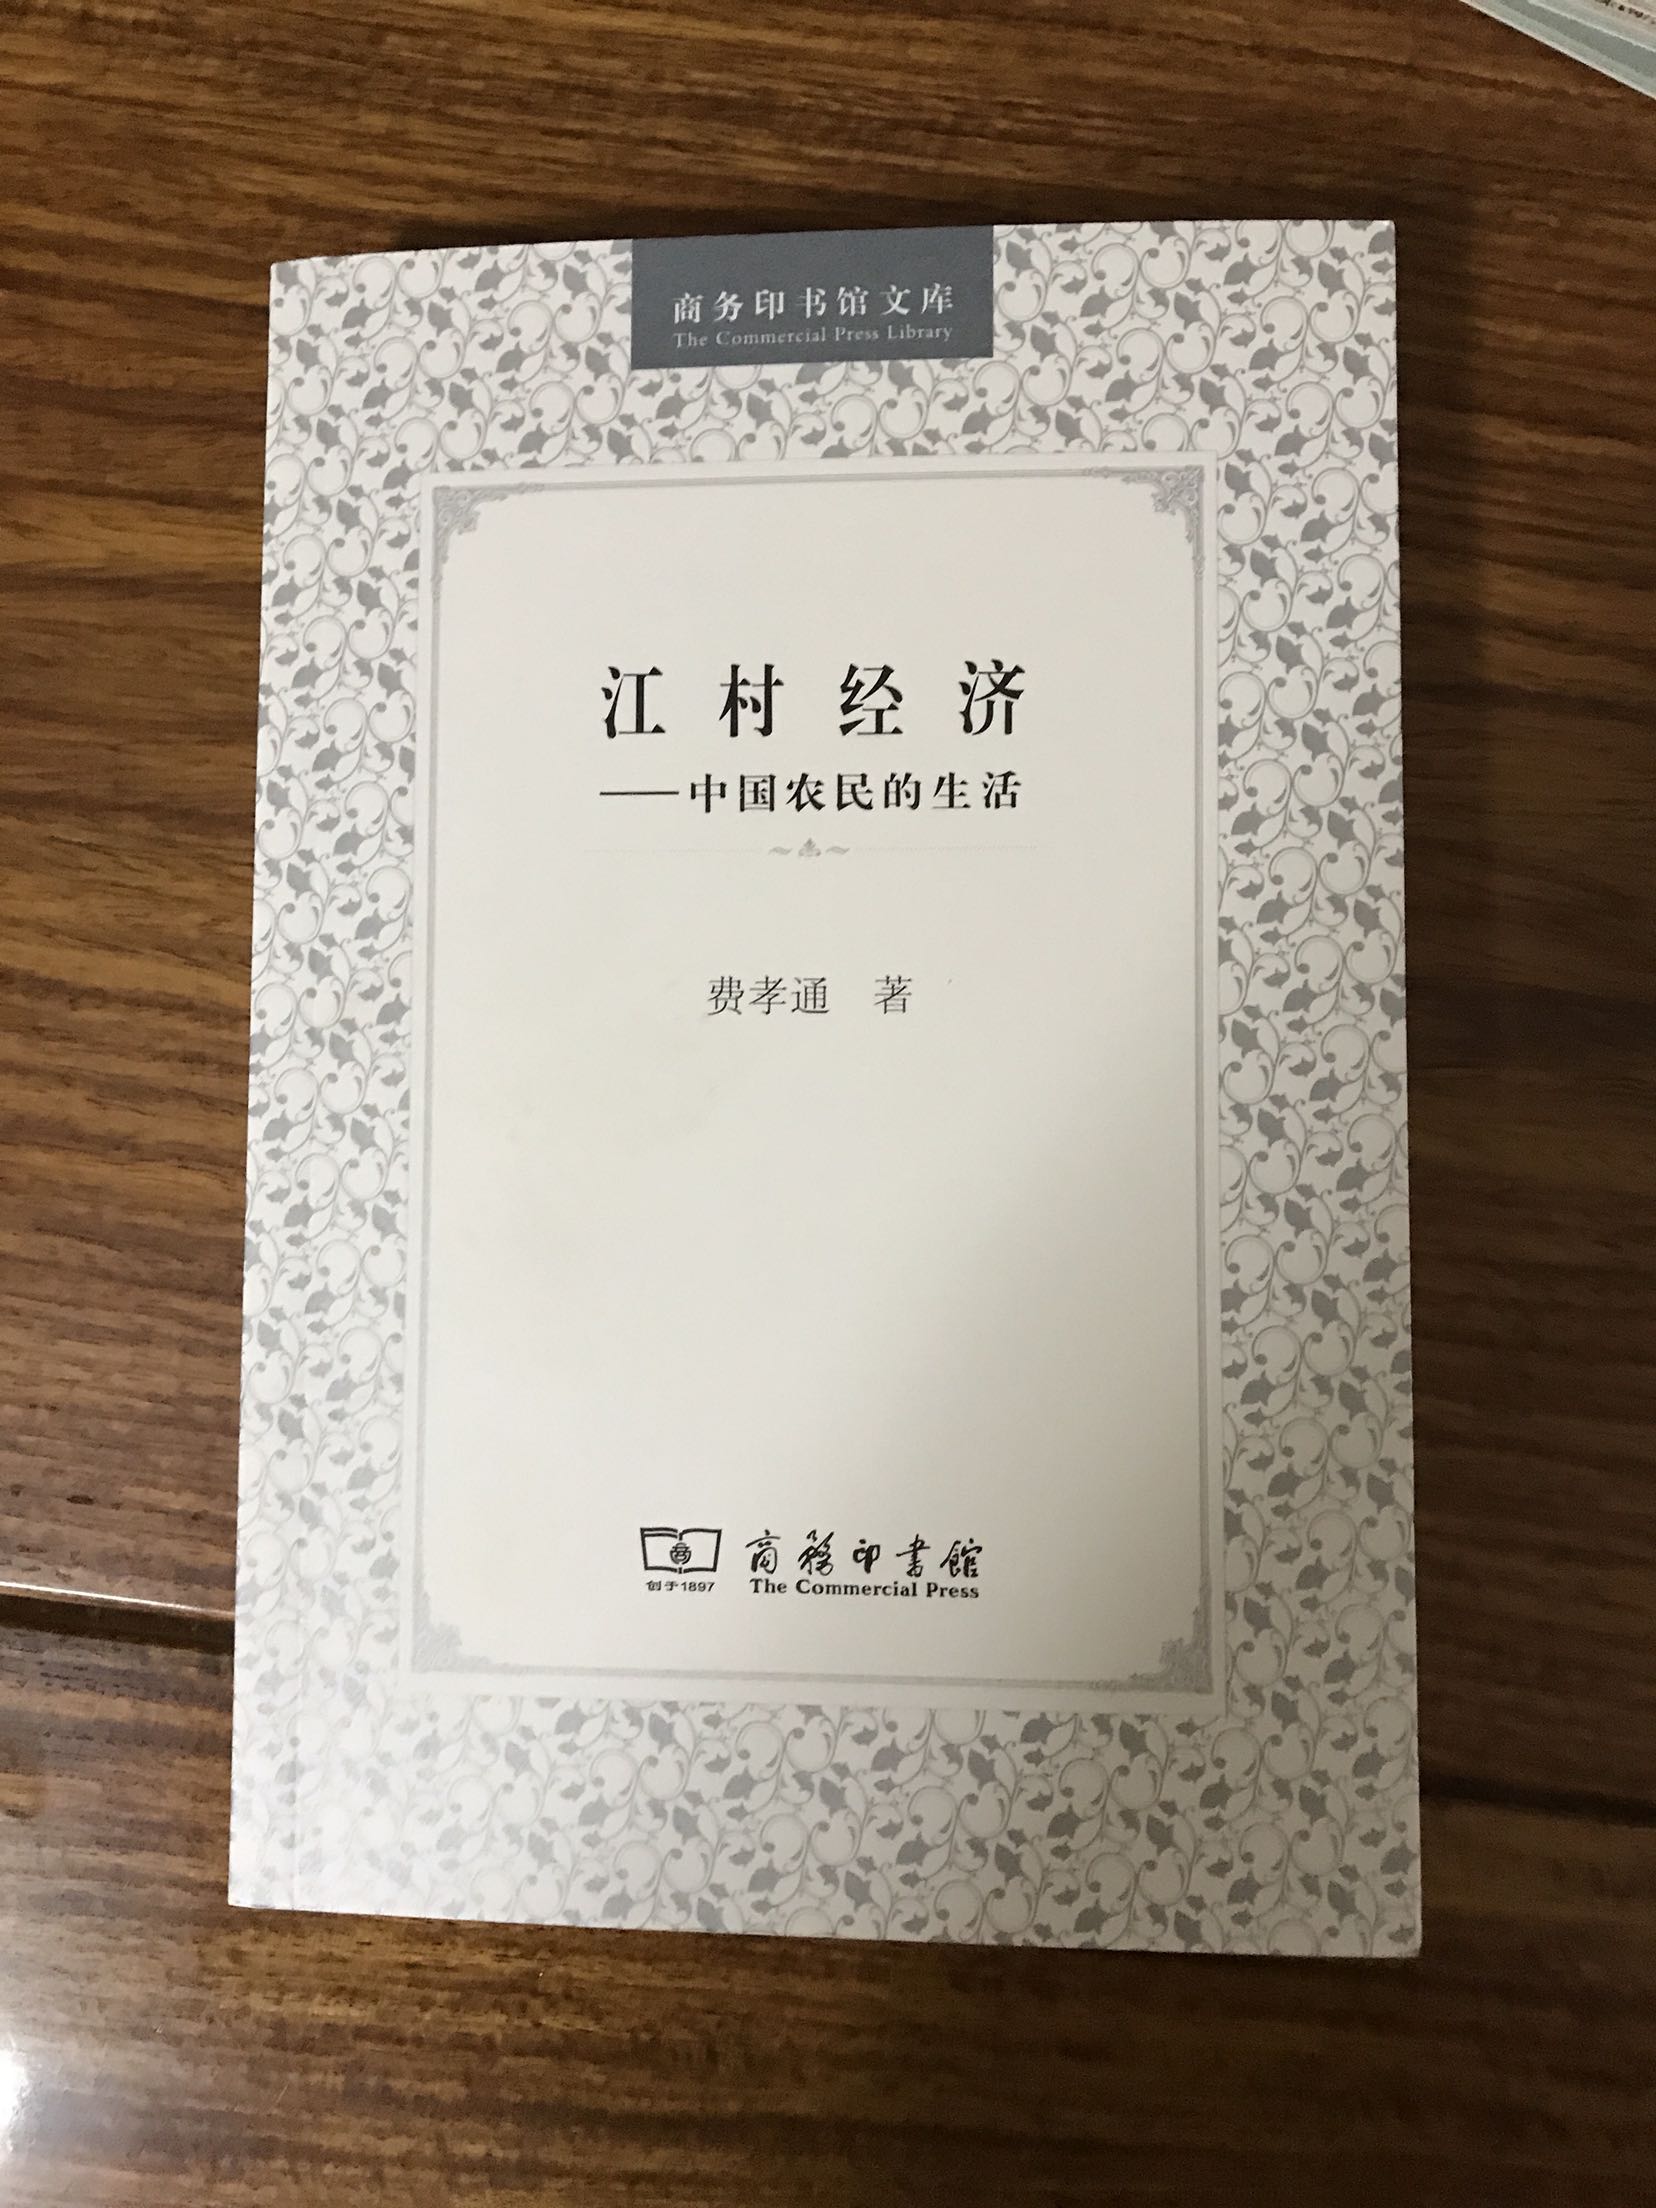 要想了解国人就去看“江村经济”，非常好地解读了中国的国民性问题。